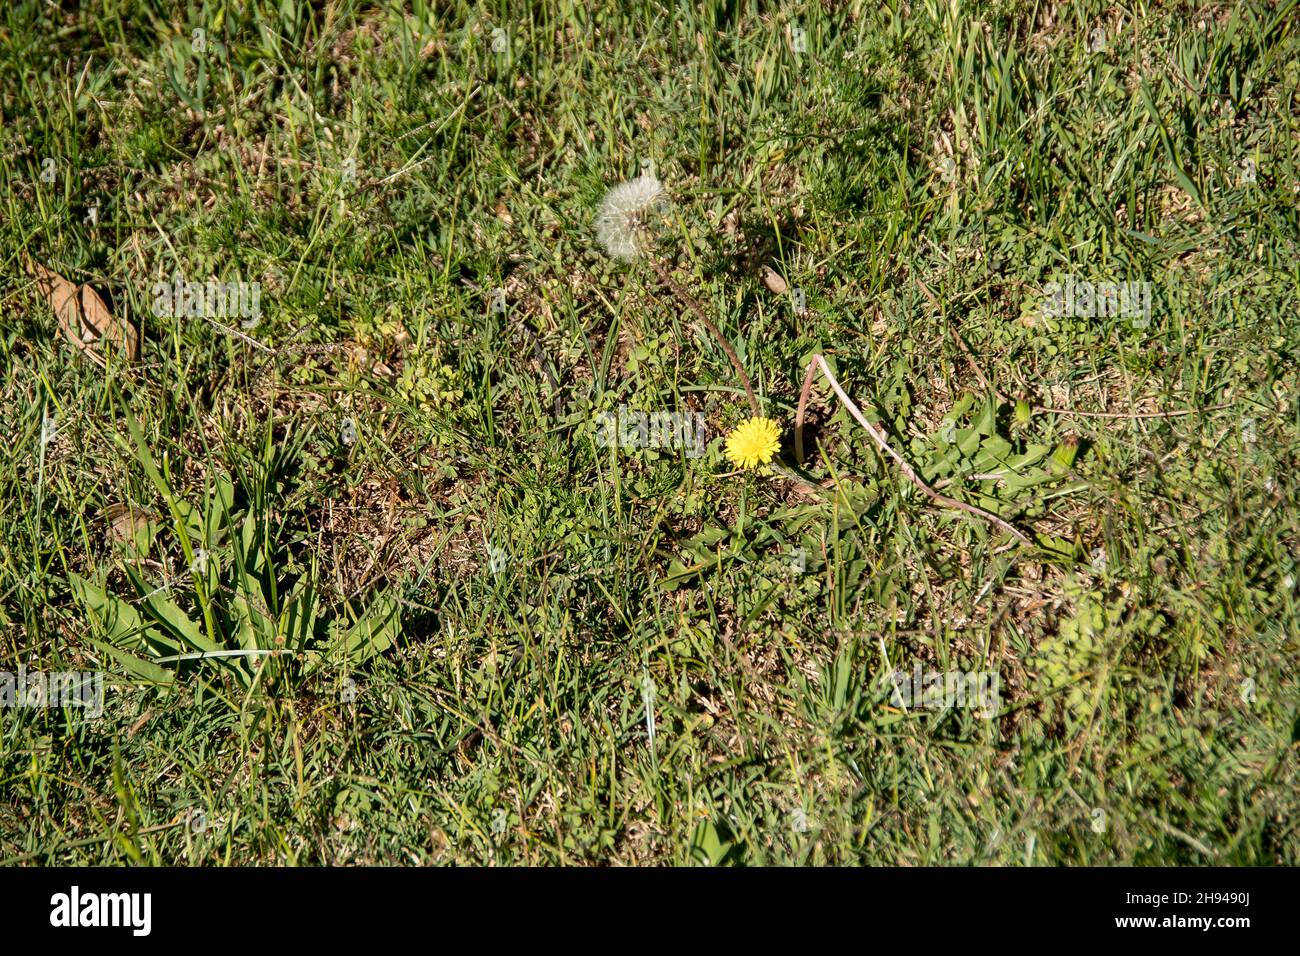 Blätter, gelbe Blume und Samenkopf von Katzenohrkraut, Hypochaeris Radicata, Flachkraut, Queensland, Australien. Fruchtbares Unkraut ähnlich wie der Dandelion. Stockfoto